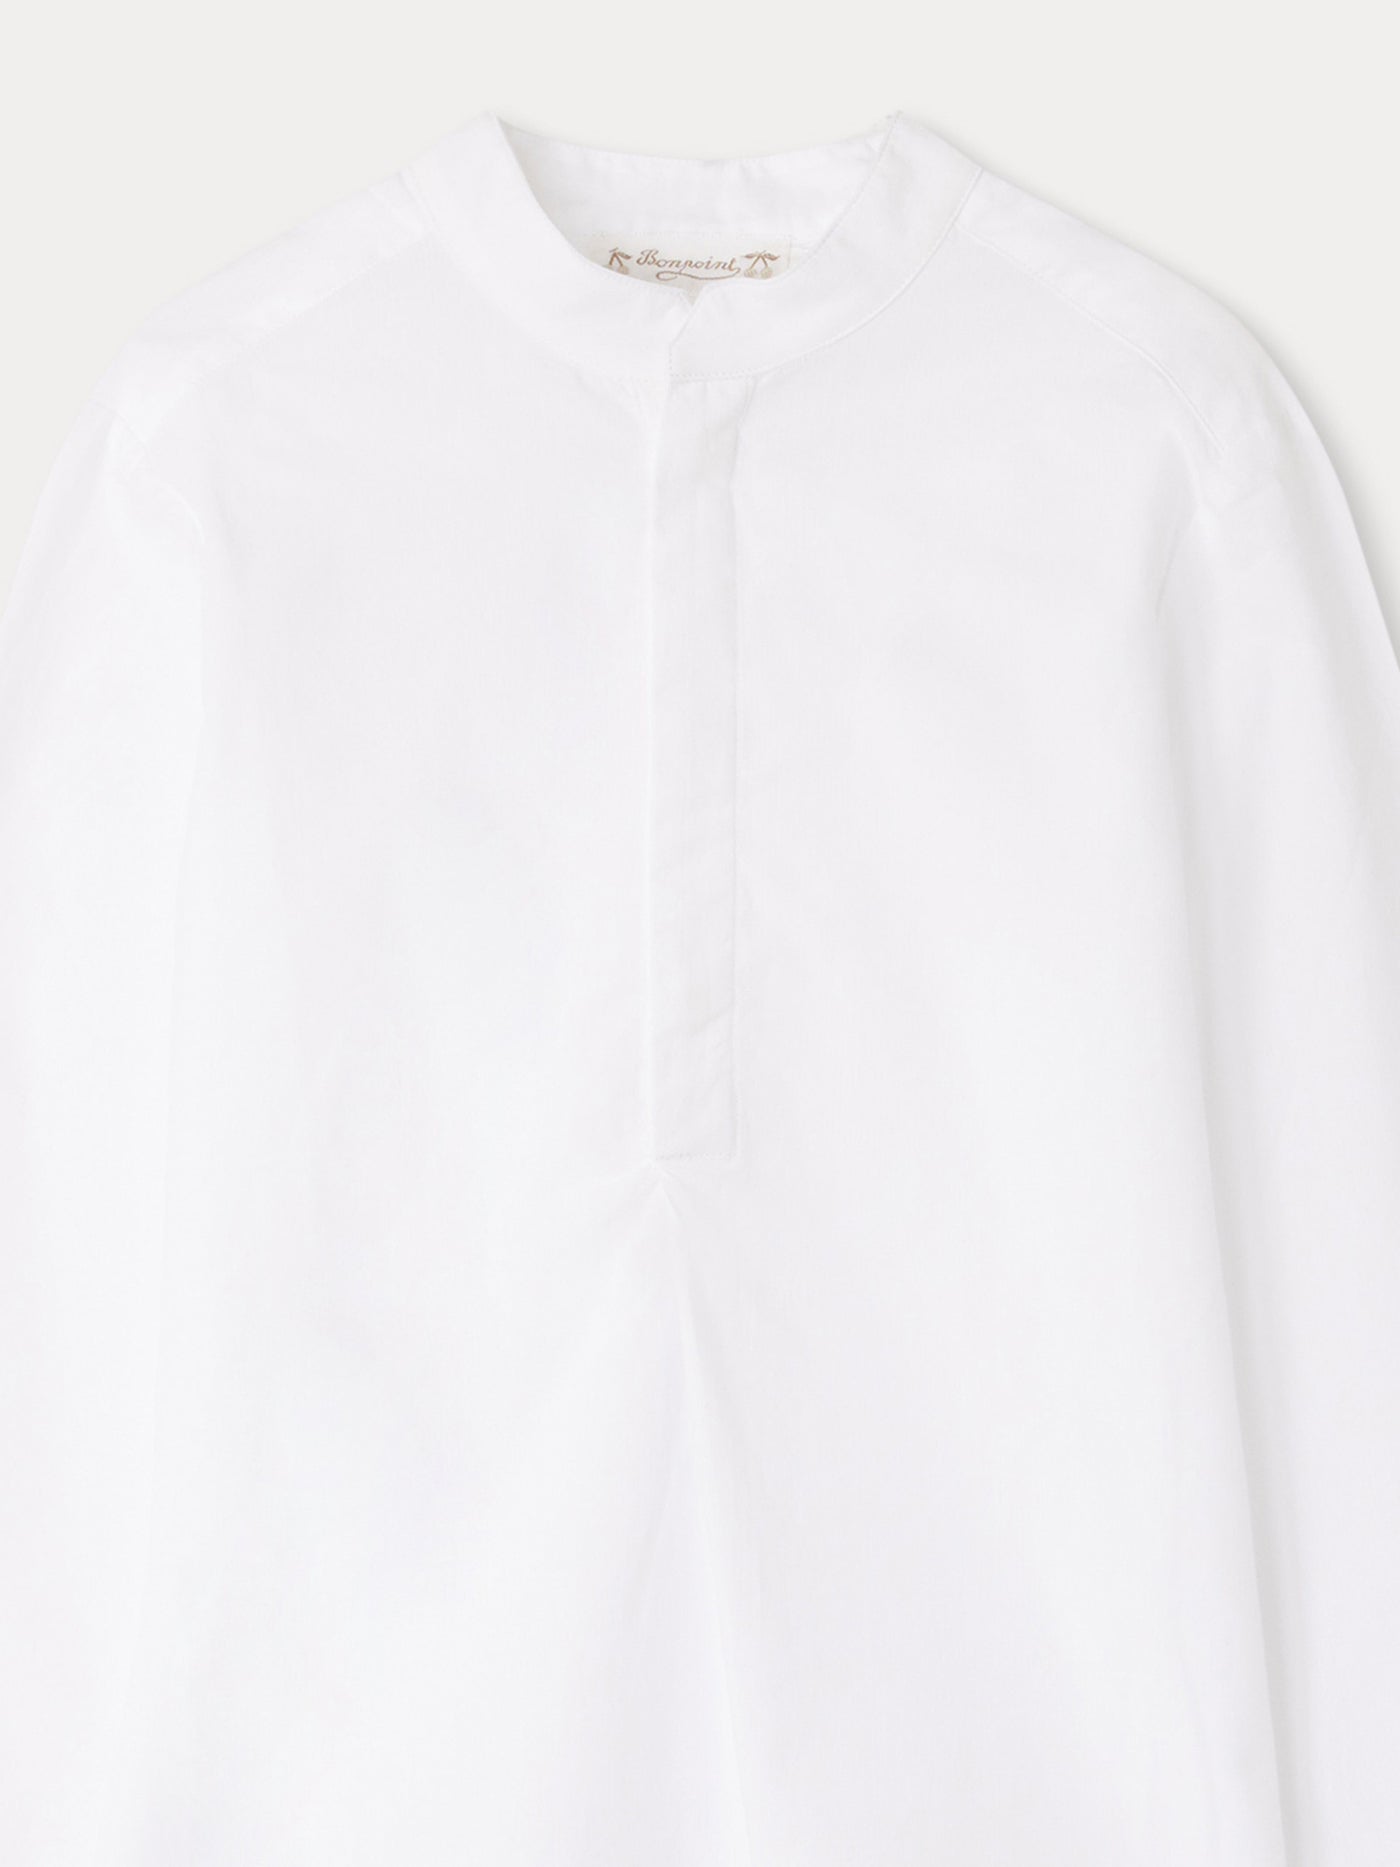 Auguste Shirt white